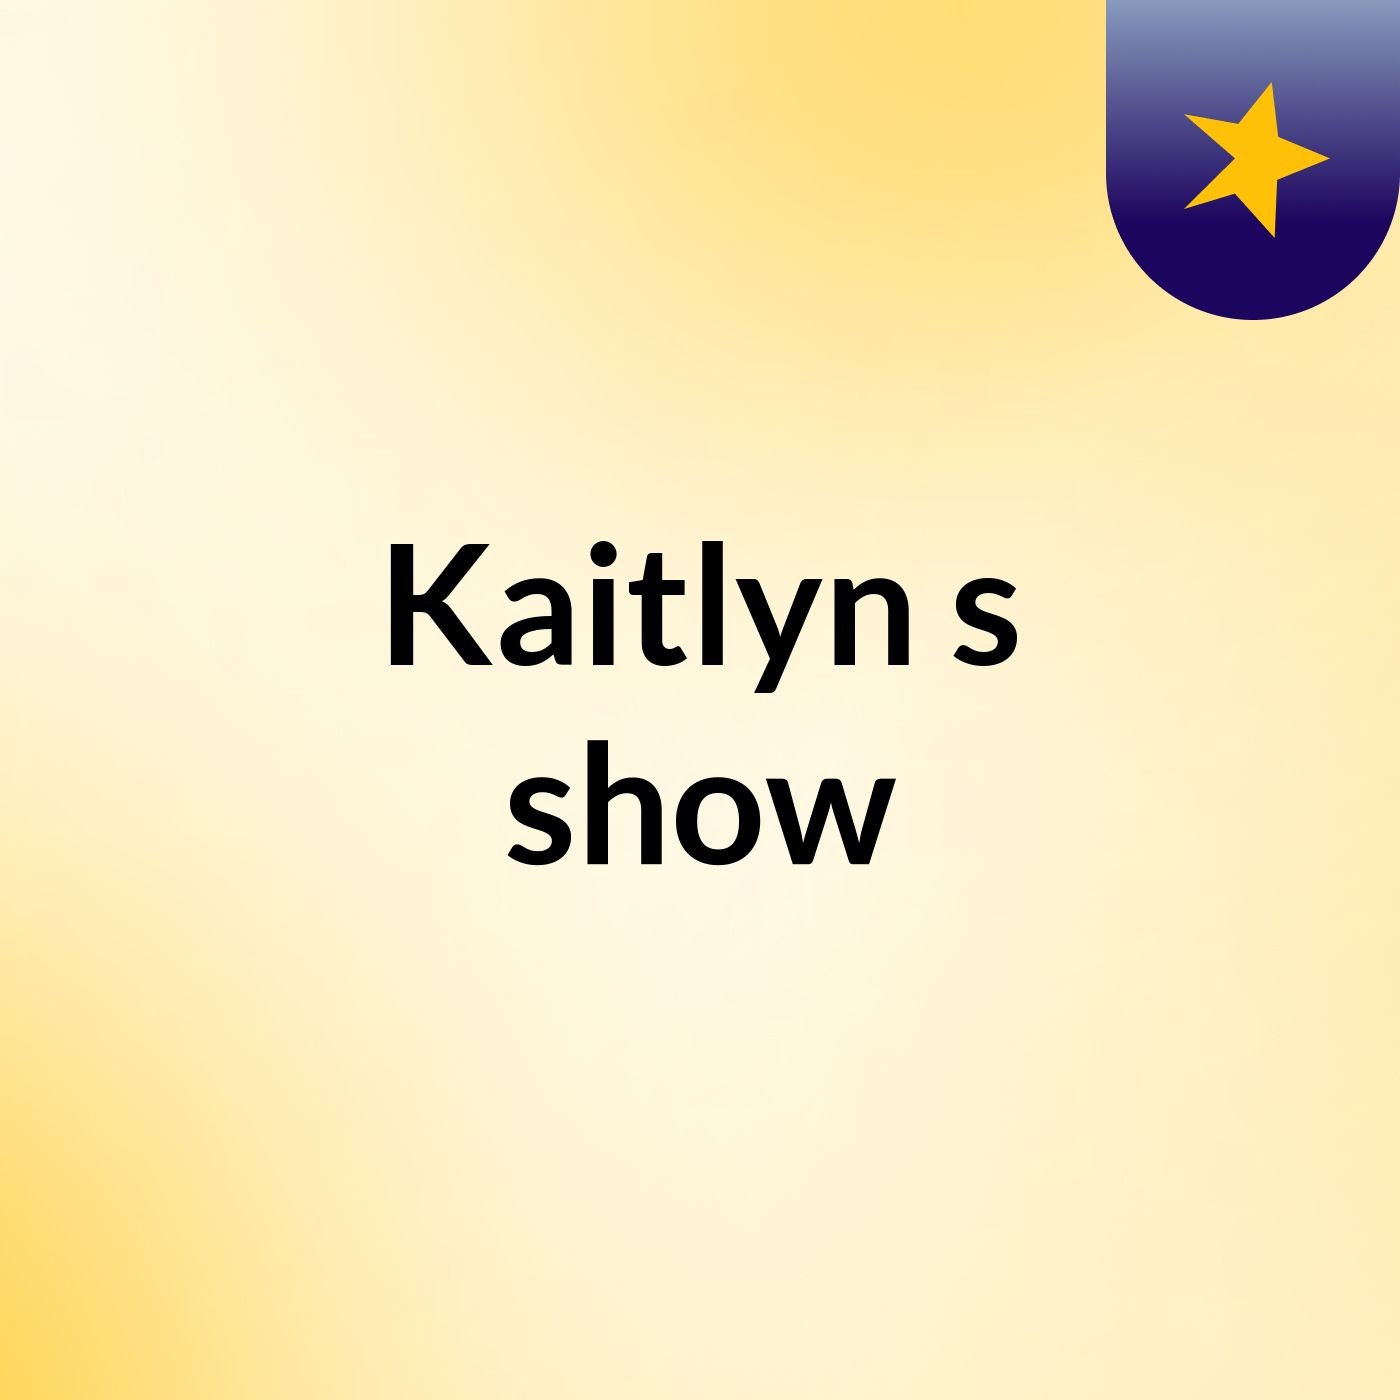 Kaitlyn's show